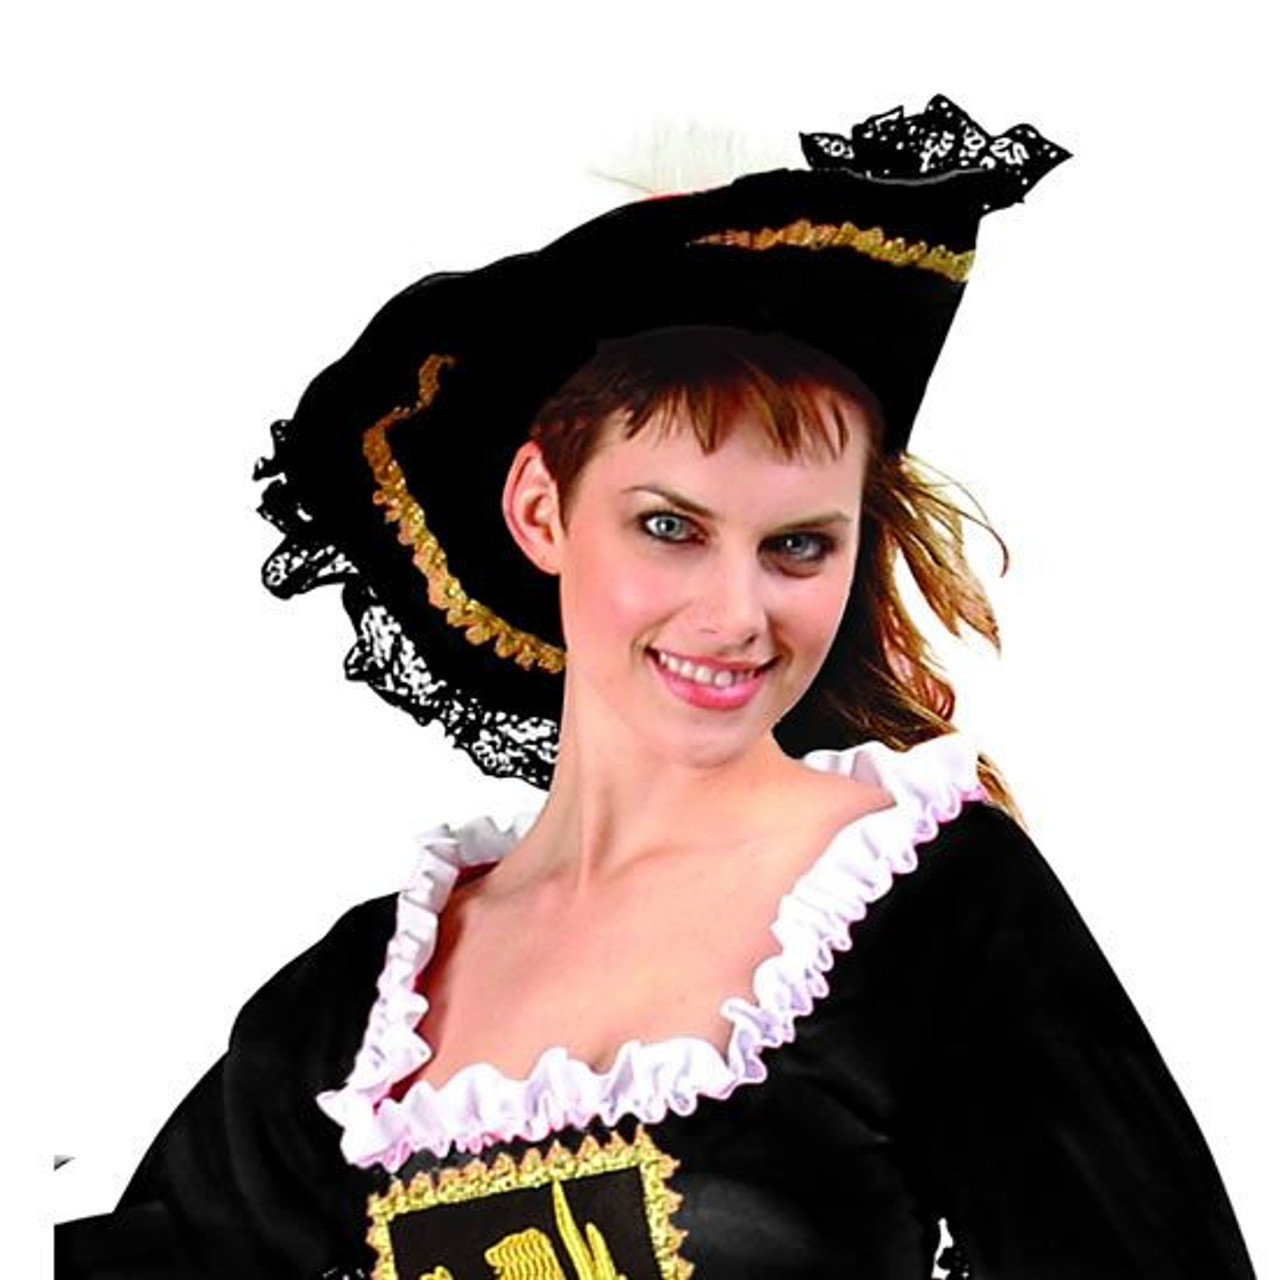 Adult Black Velvet Pirate Hat